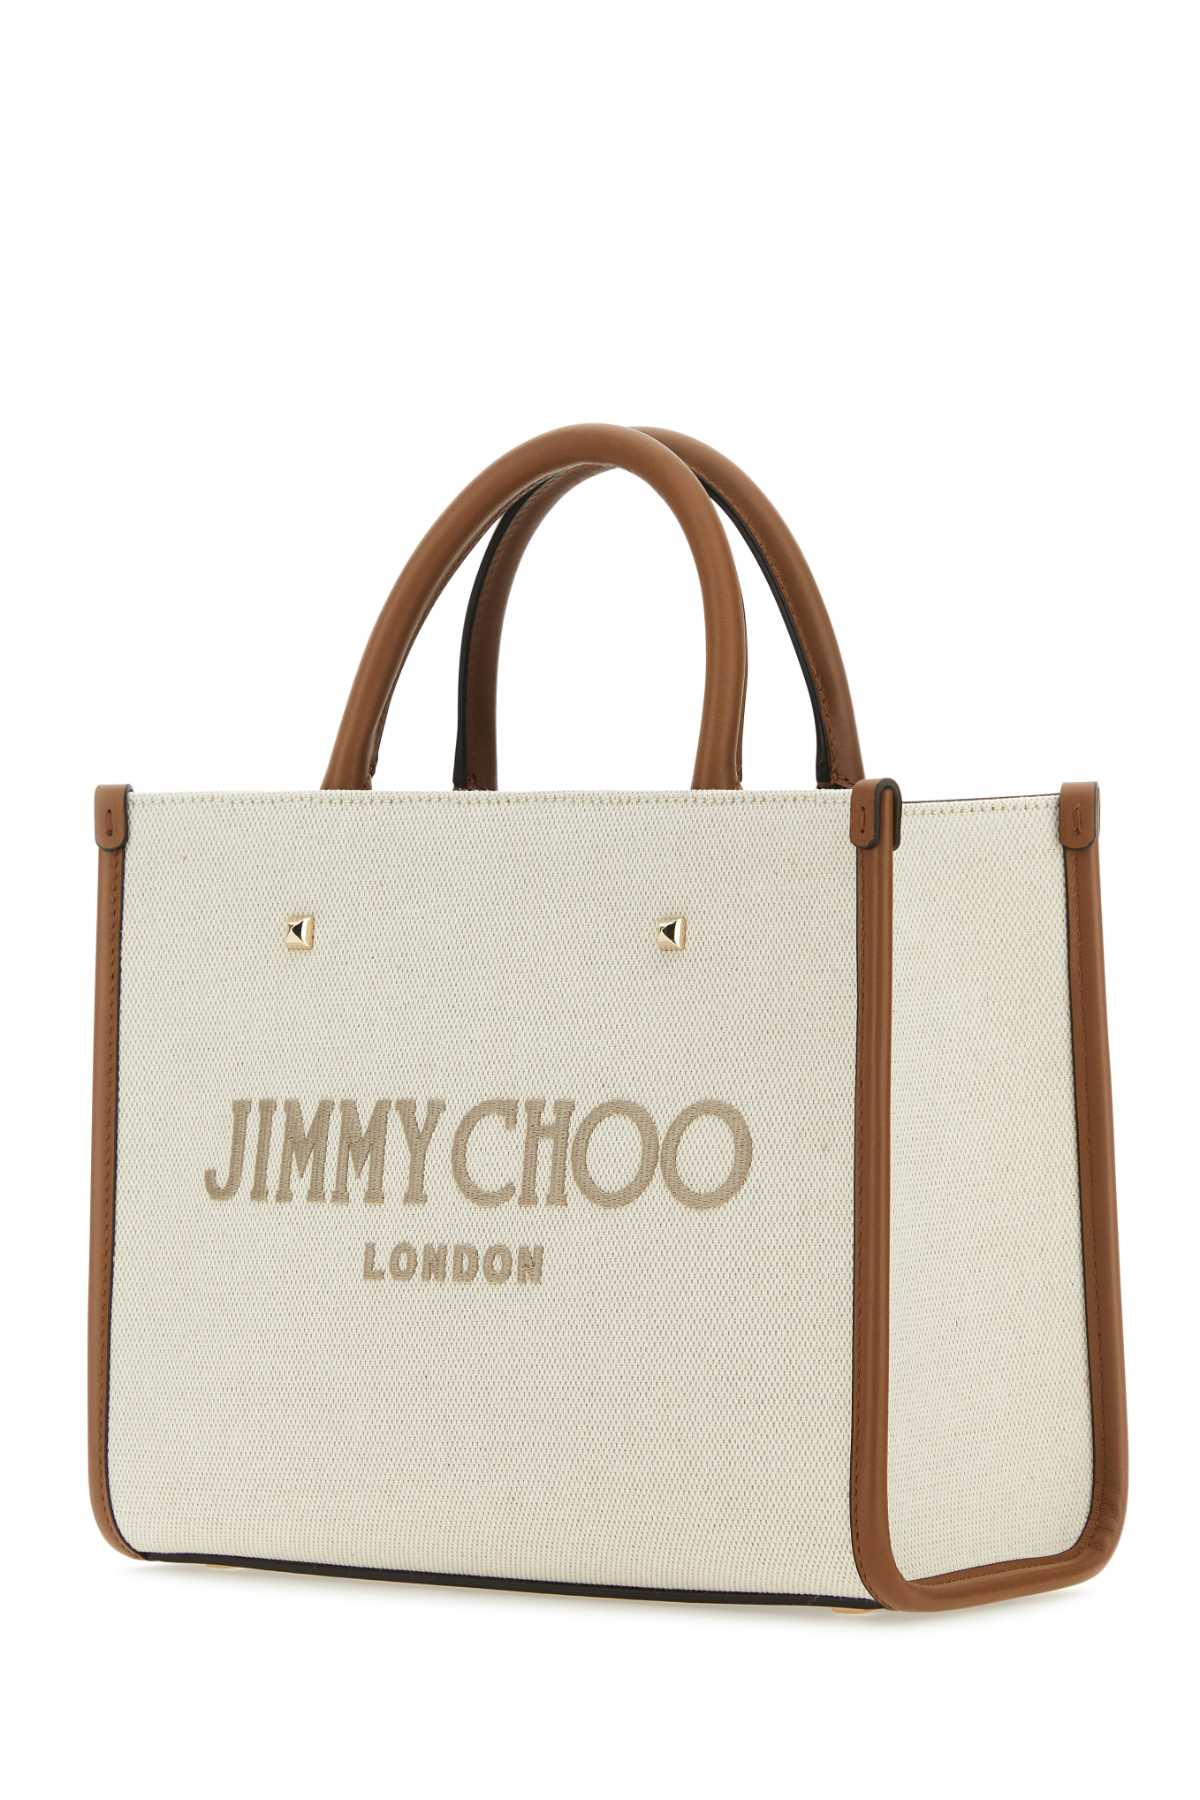 Jimmy Choo Sand Canvas Avenue S Handbag In Naturaltaupedarktanlightgold